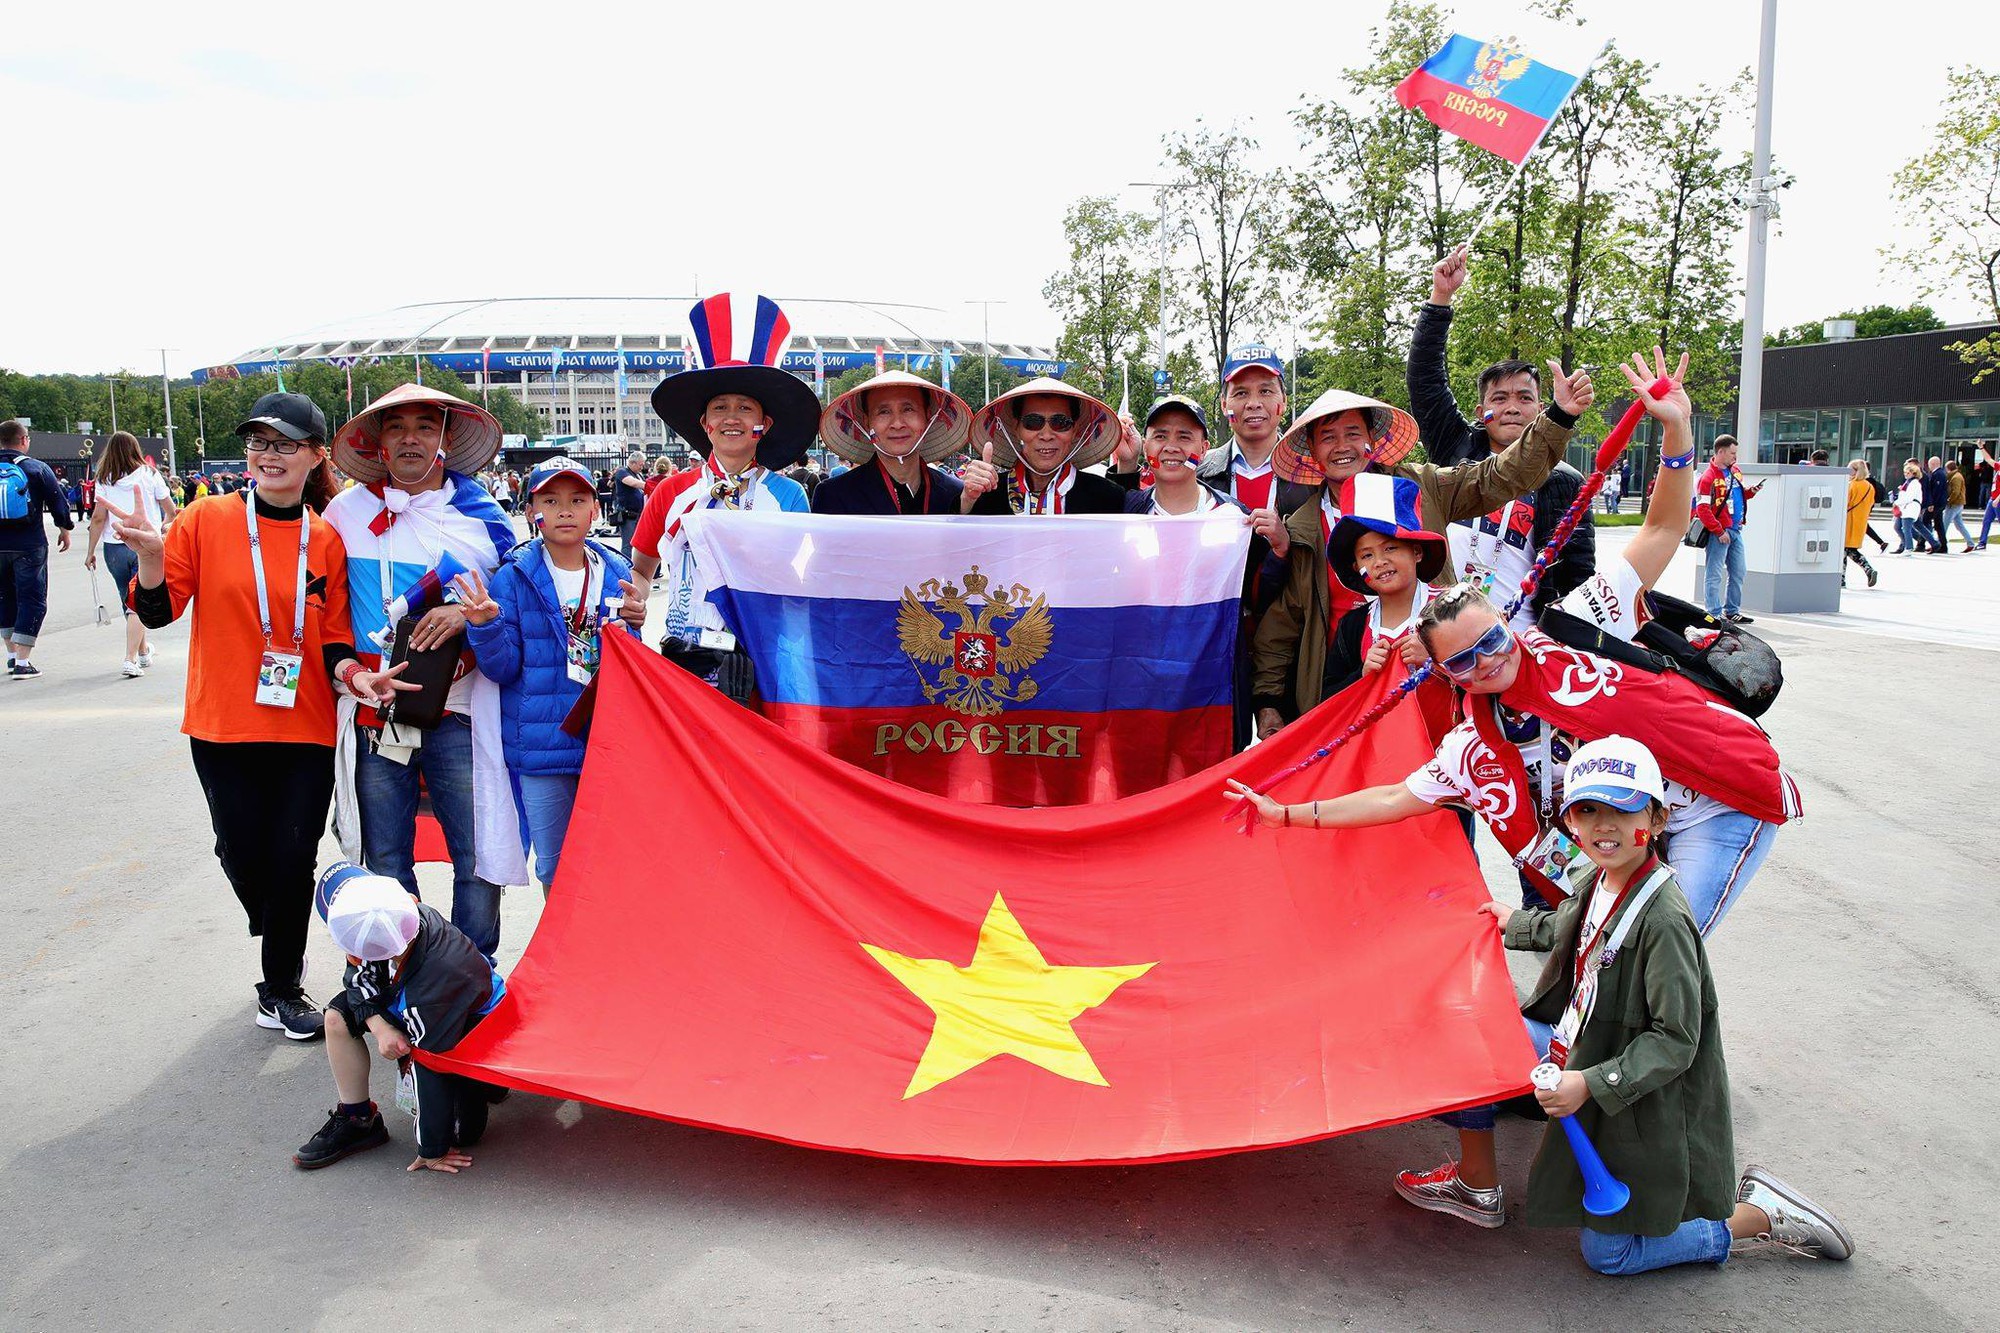 Năm 2024, nhìn lại giải đấu World Cup 2018, cờ Việt Nam trên khán đài đã trở thành một biểu tượng tuyệt vời của những người yêu bóng đá Việt Nam. Đó là niềm tự hào cho cả đất nước vì trân trọng hình ảnh và giá trị của cờ quốc gia. Hãy cùng nhìn lại những khoảnh khắc đầy cảm xúc đó qua hình ảnh cờ World Cup 2018 Việt Nam.